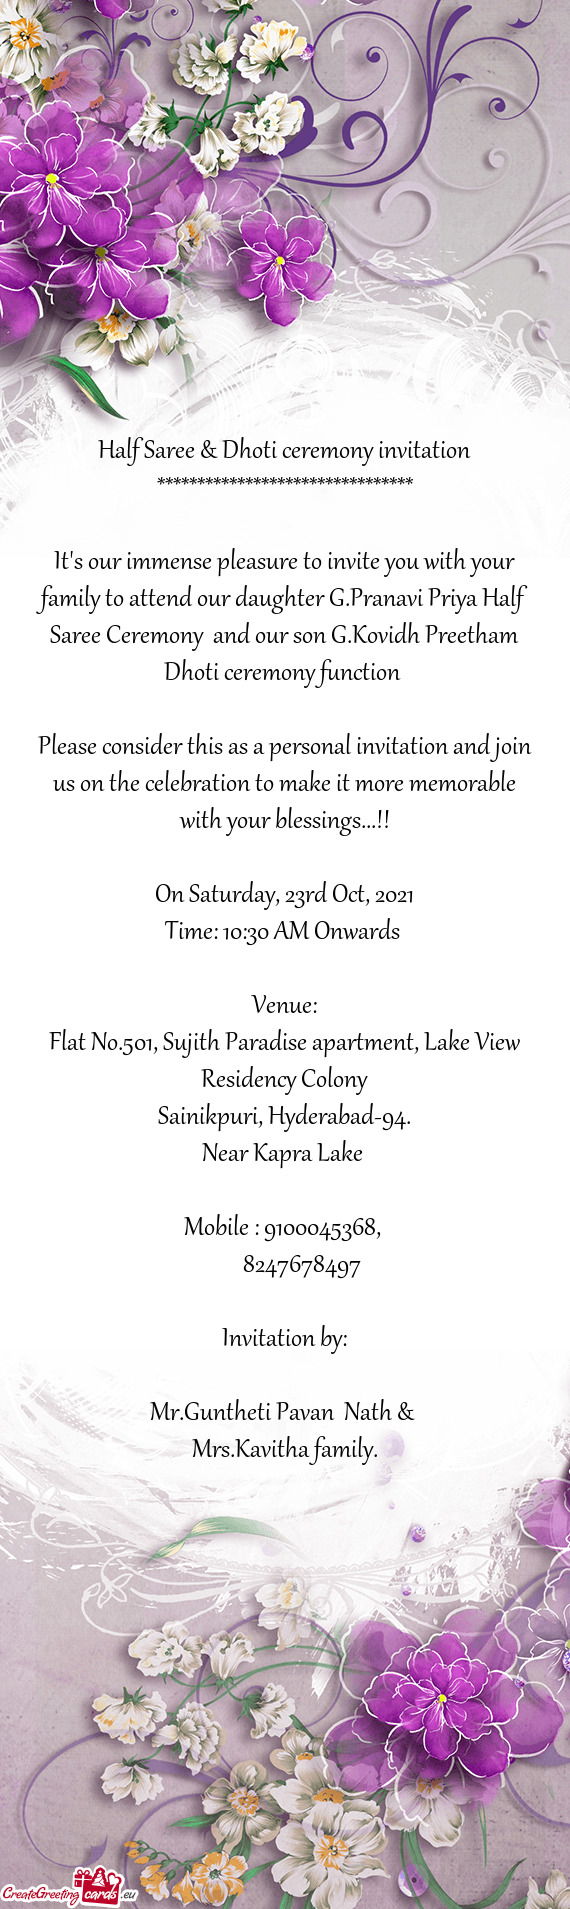 Half Saree & Dhoti ceremony invitation